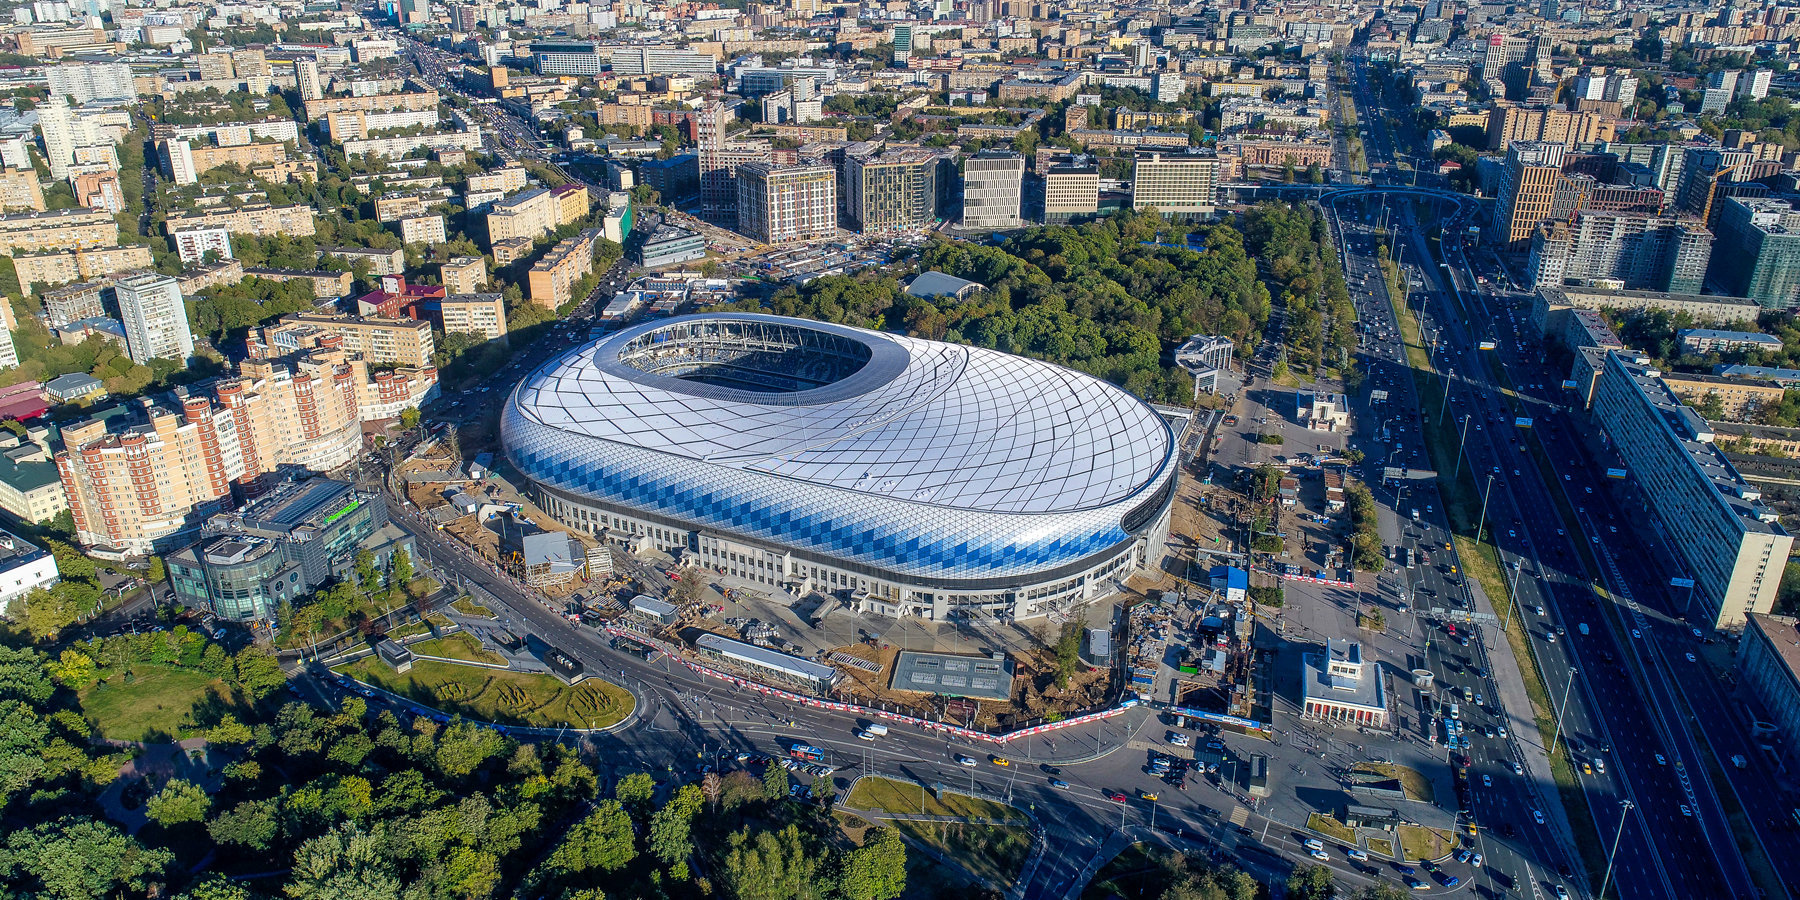 Стадион динамо владивосток фото